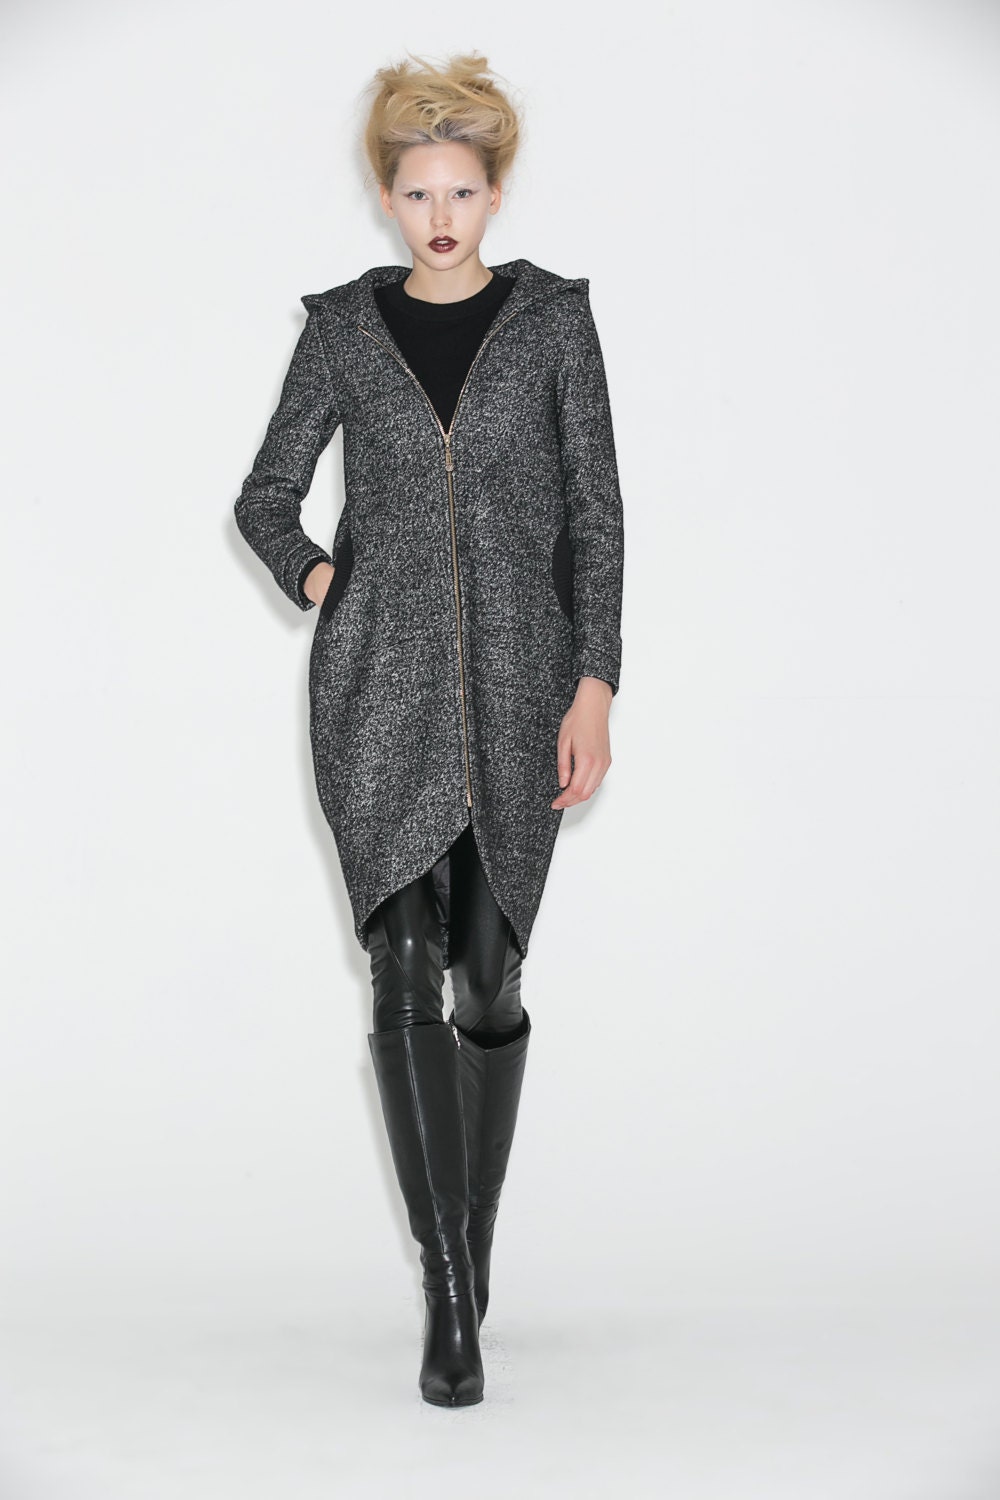 Hooded Winter Coat Gray Mid Length Womens Jacket Zipper | Etsy